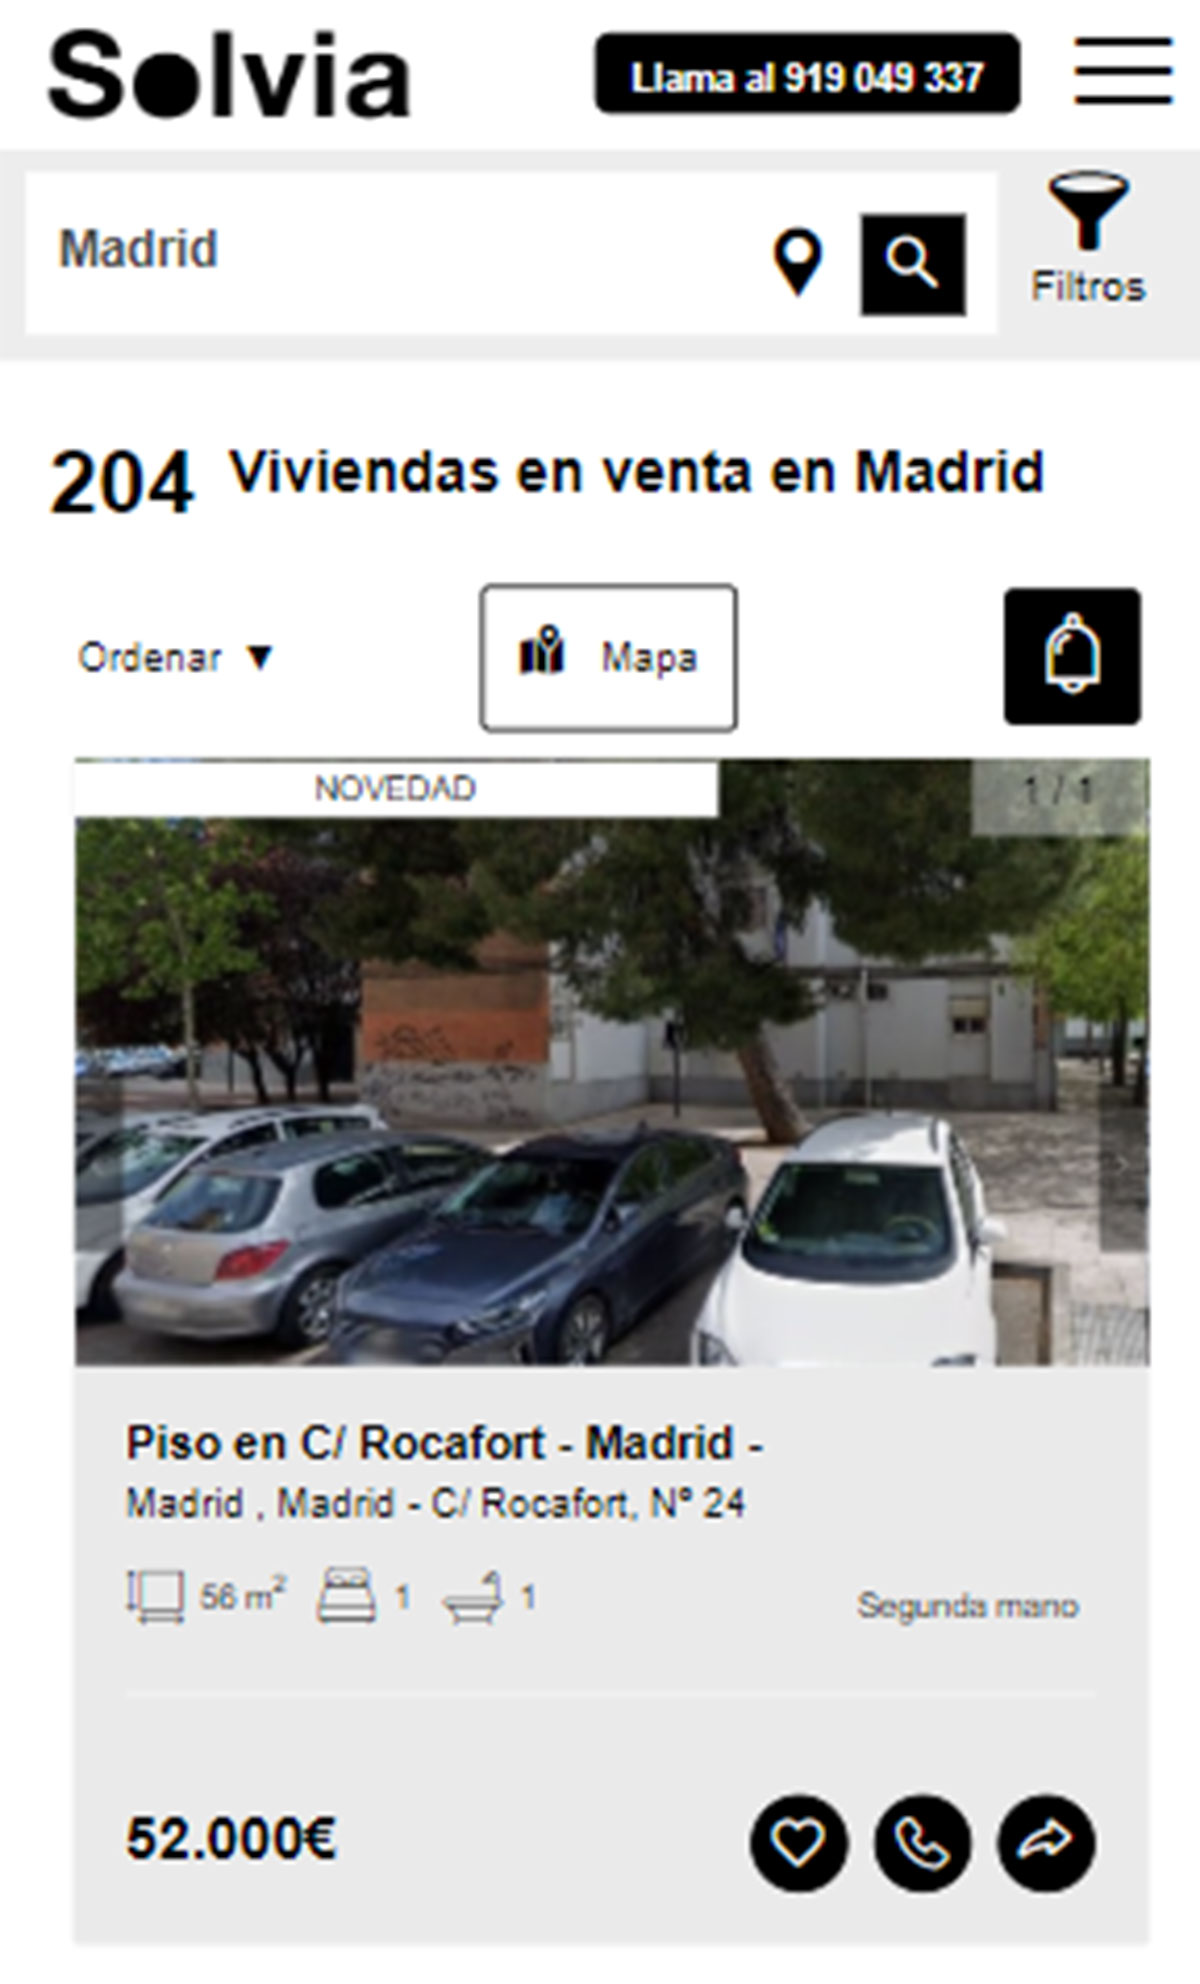 Piso en la ciudad de Madrid por 52.000 euros